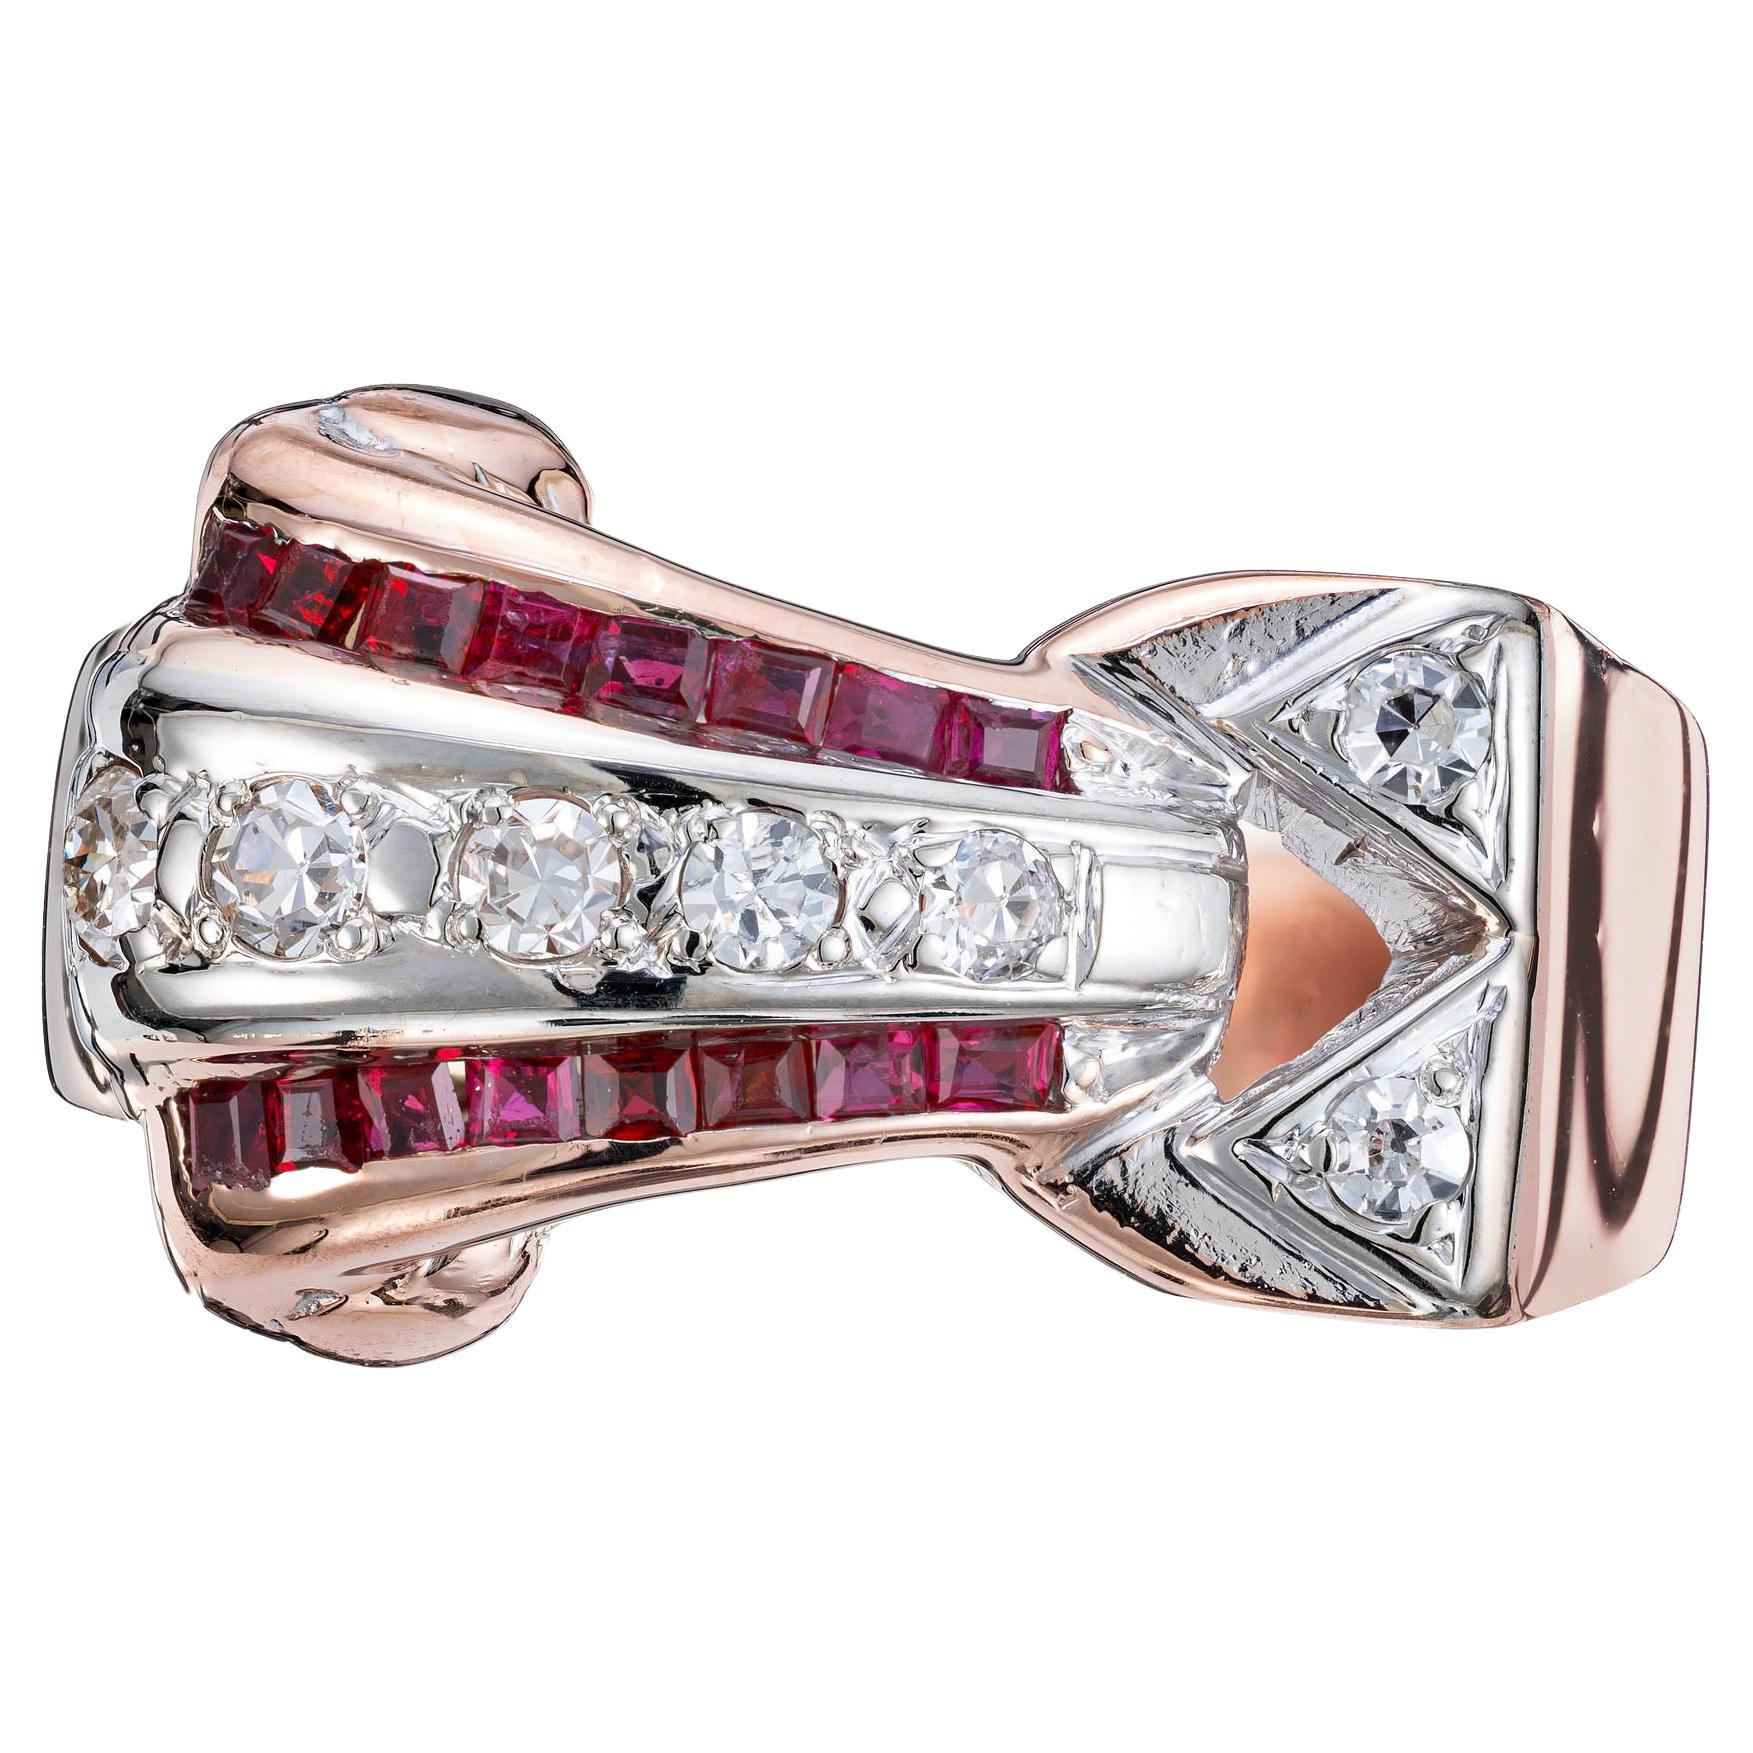 Ruby Diamond Gold Palladium Ring